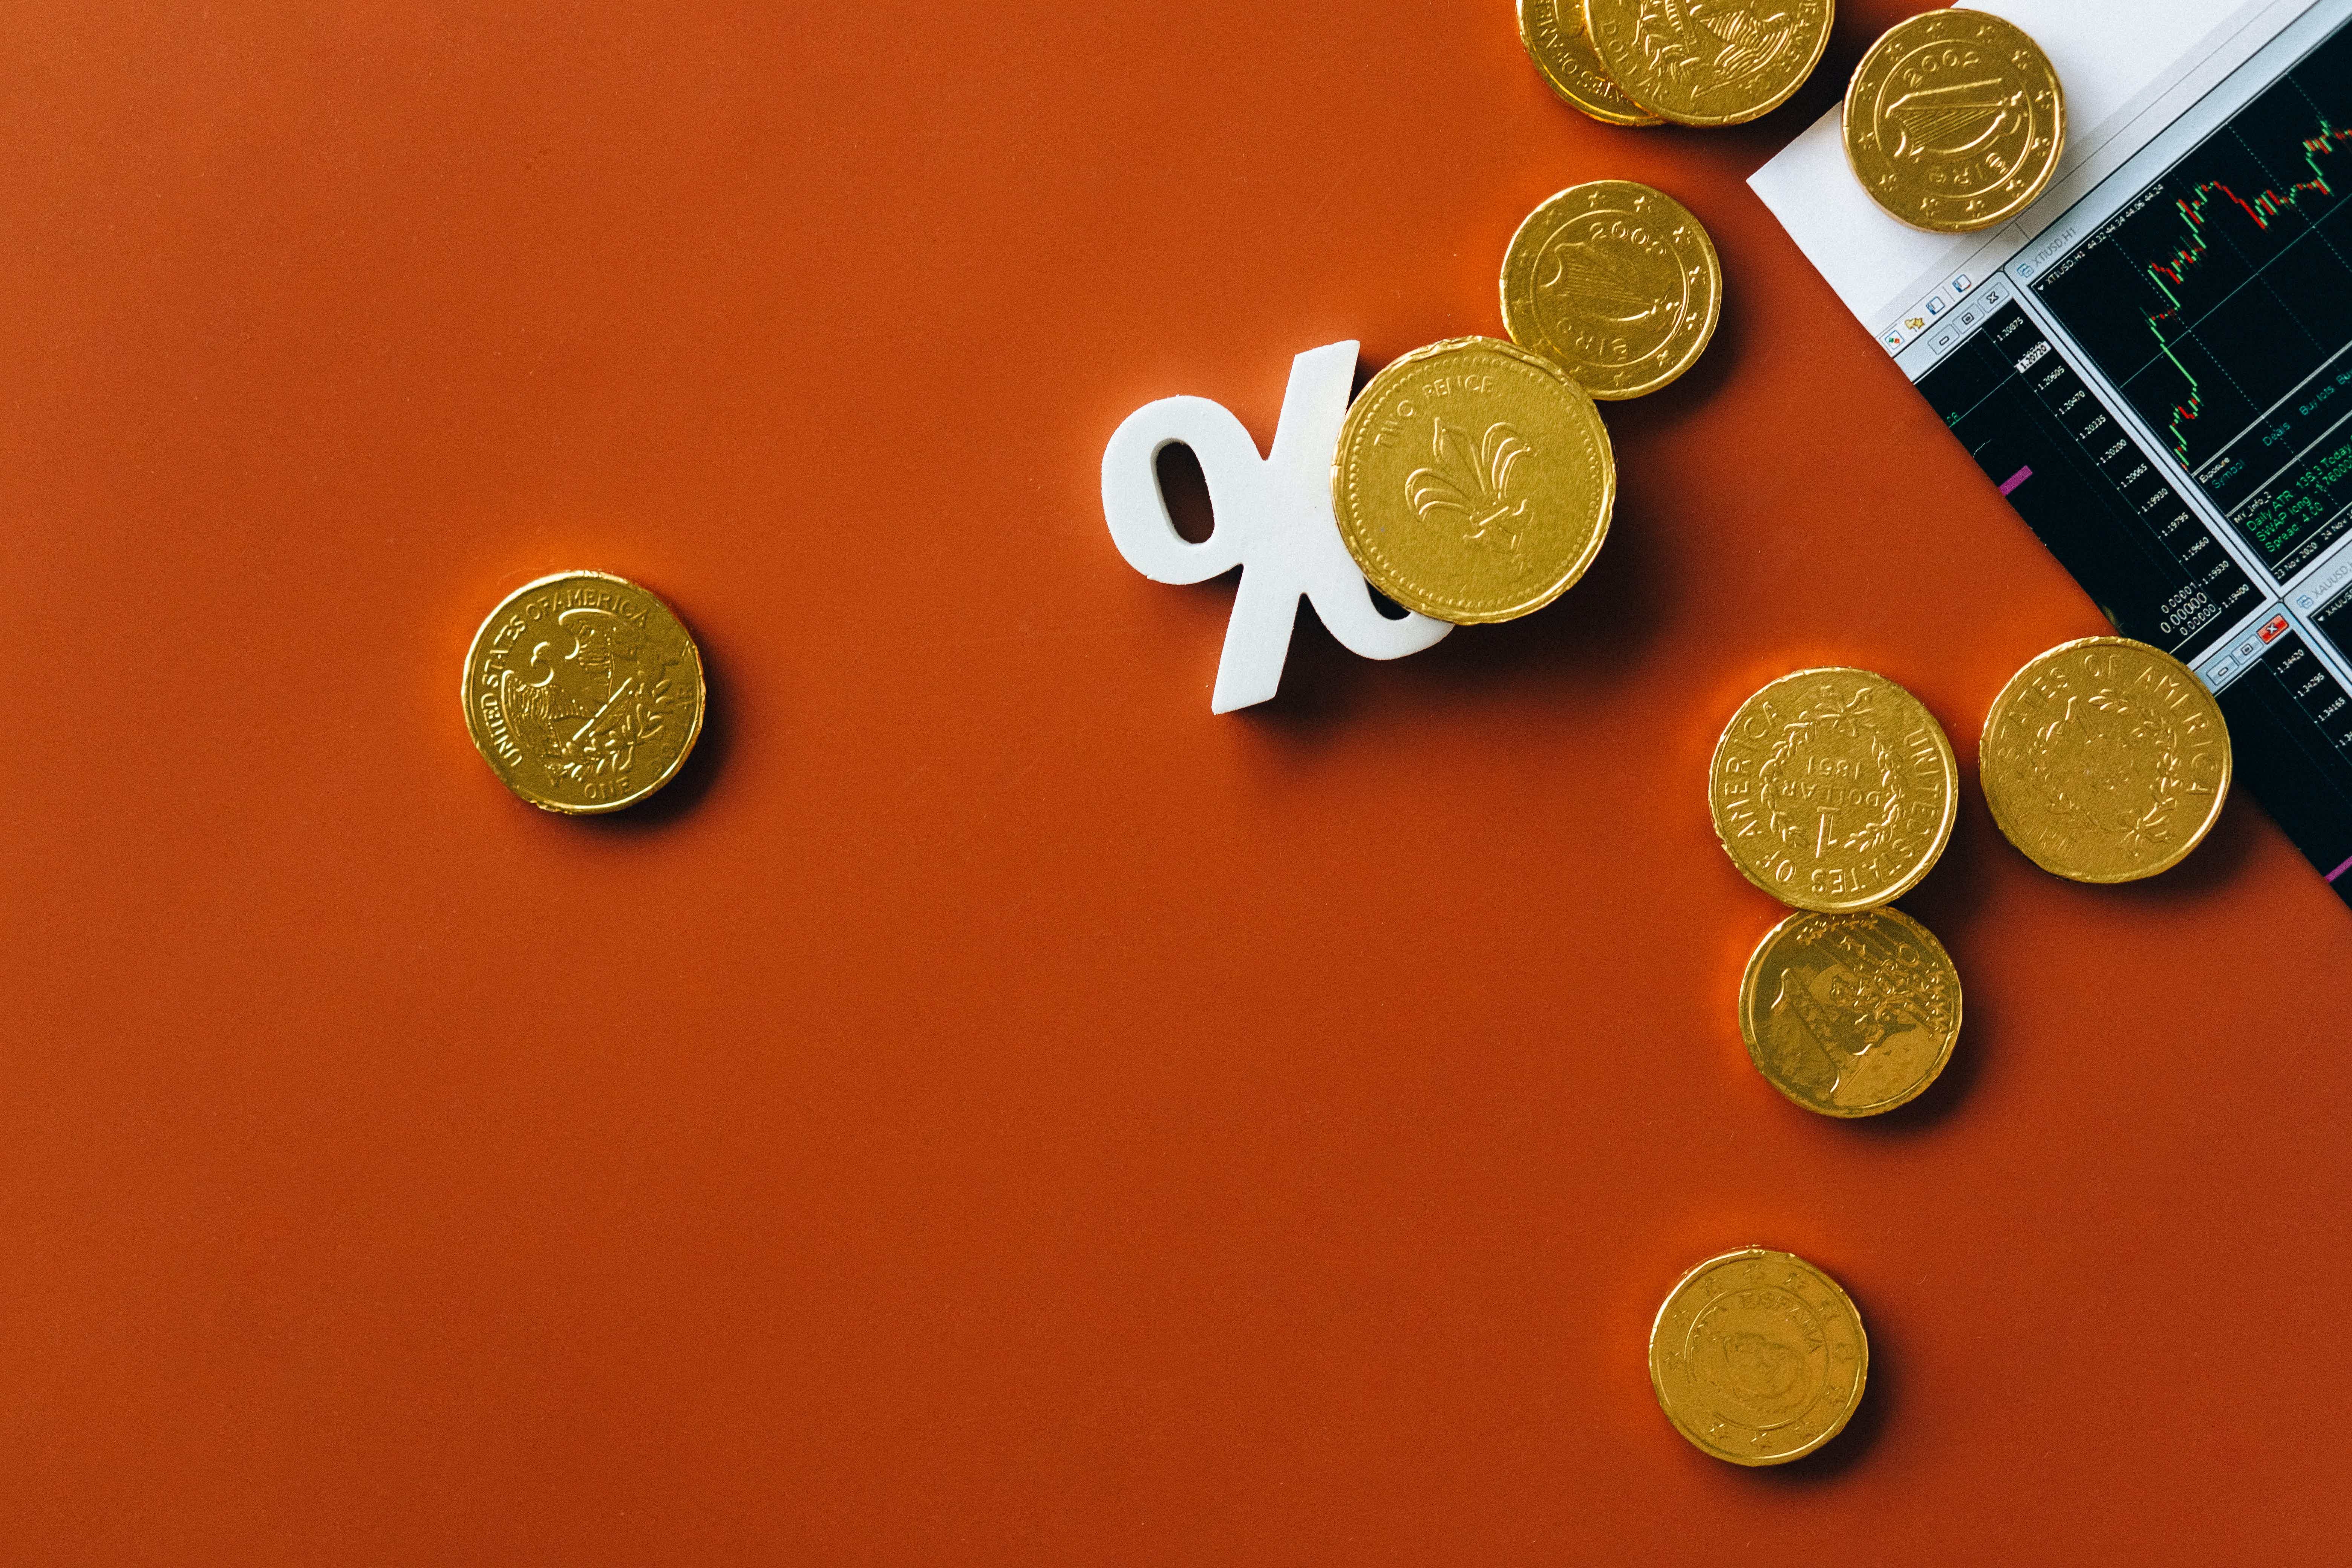 Descubra como economizar dinheiro usando o cashback. Foto: Pexels / Nataliya Vaitkevich